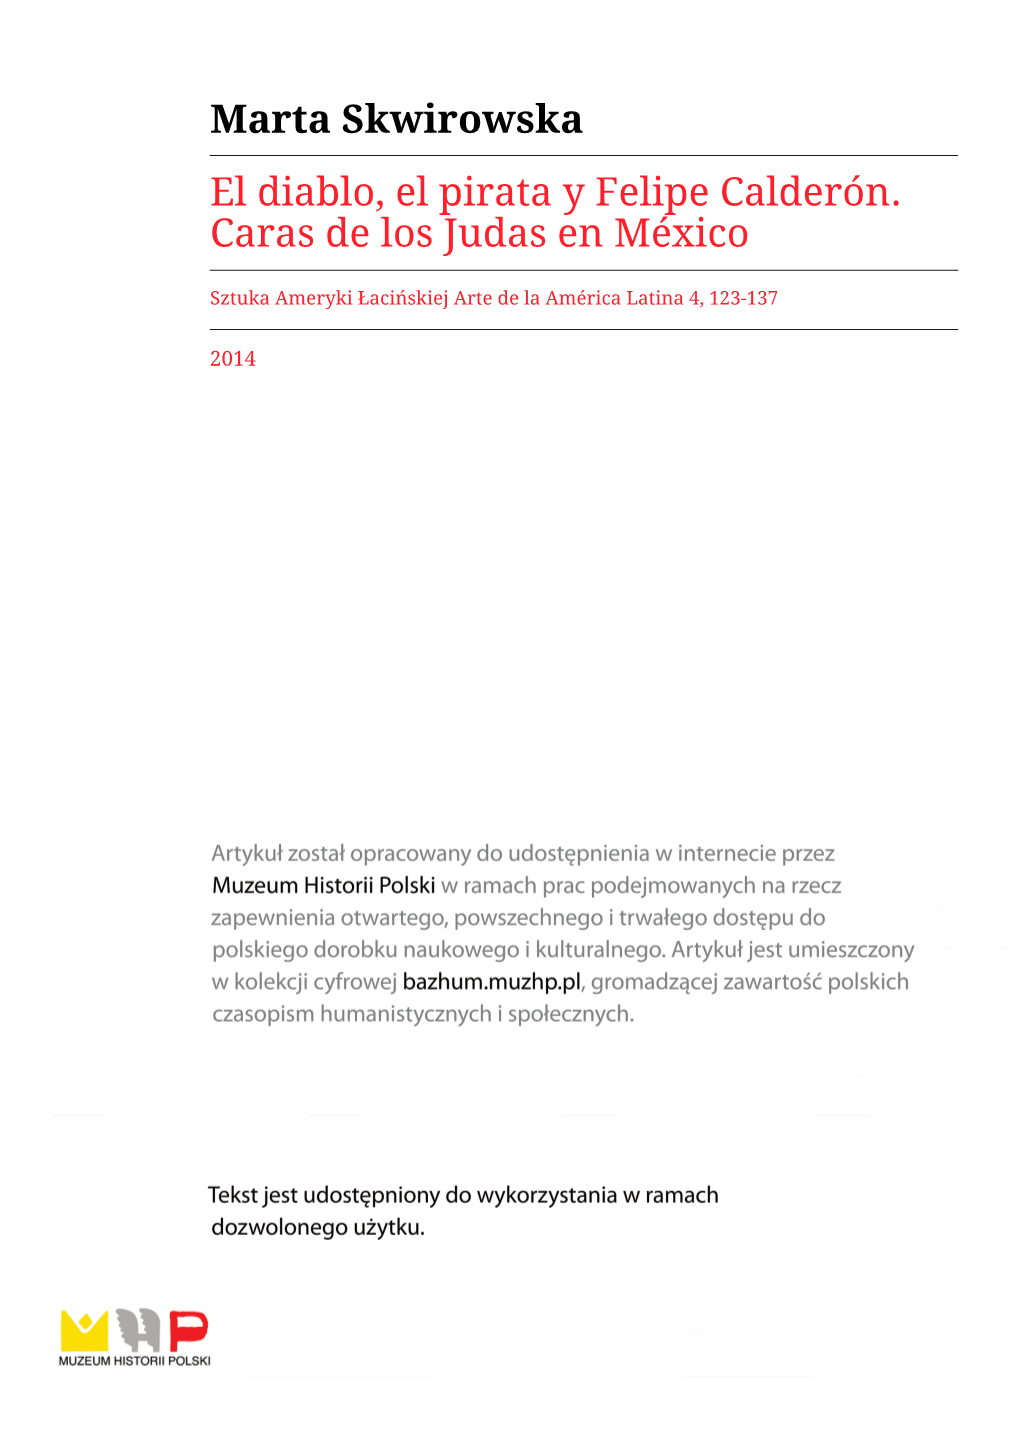 Marta Skwirowska El Diablo, El Pirata Y Felipe Calderón. Caras De Los Judas En México